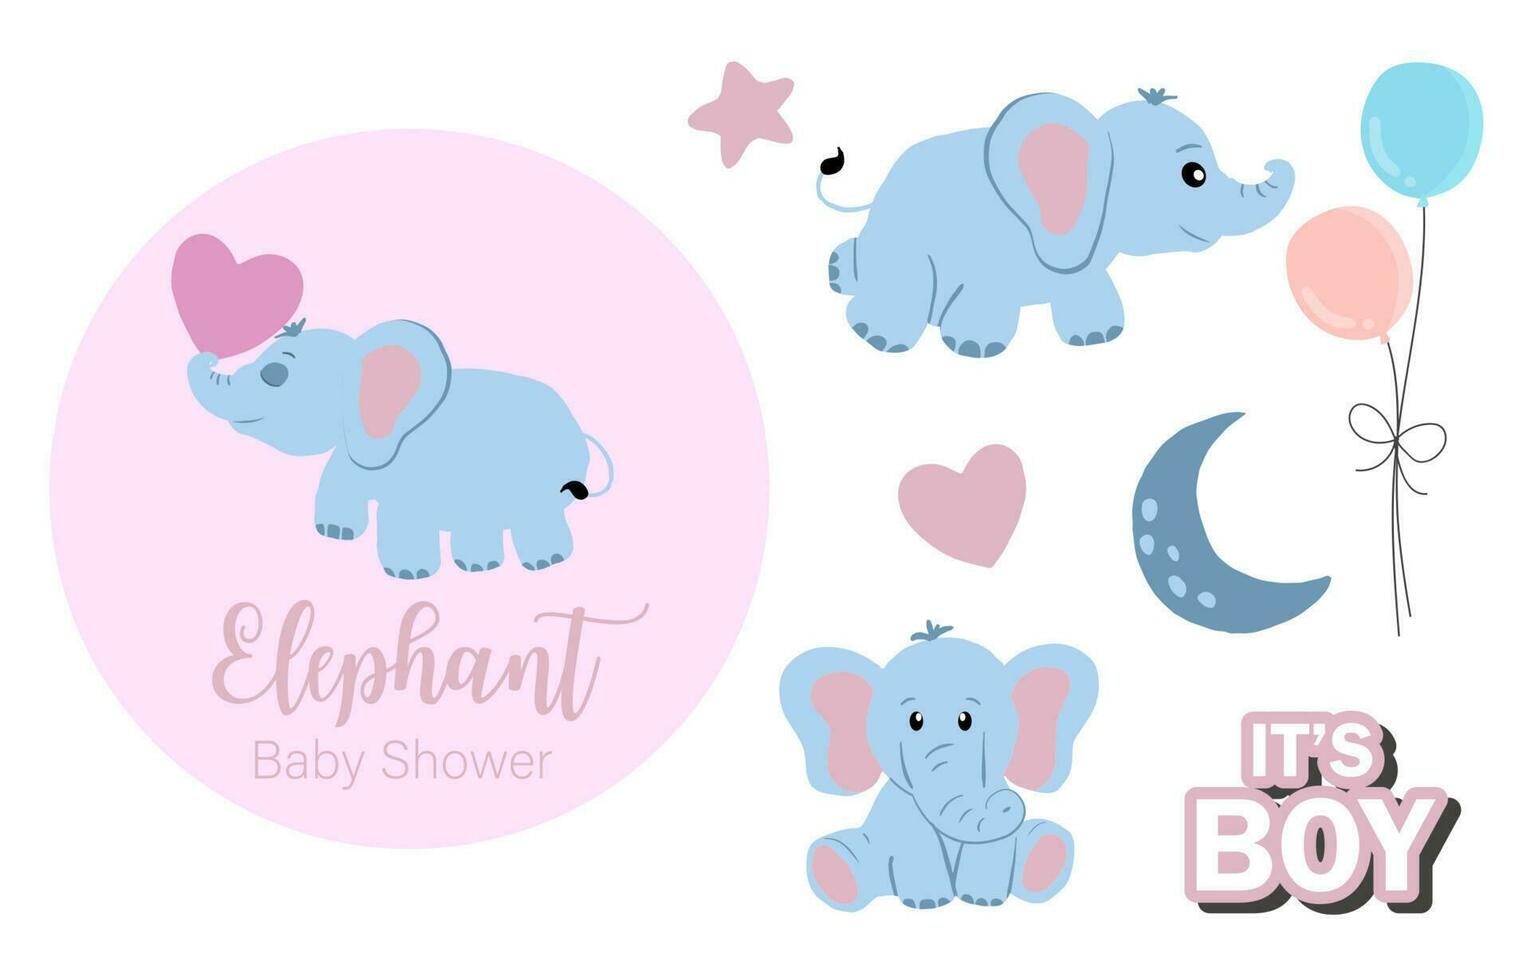 bebé elefante objeto con estrella, corazón, globo para cumpleaños tarjeta postal vector